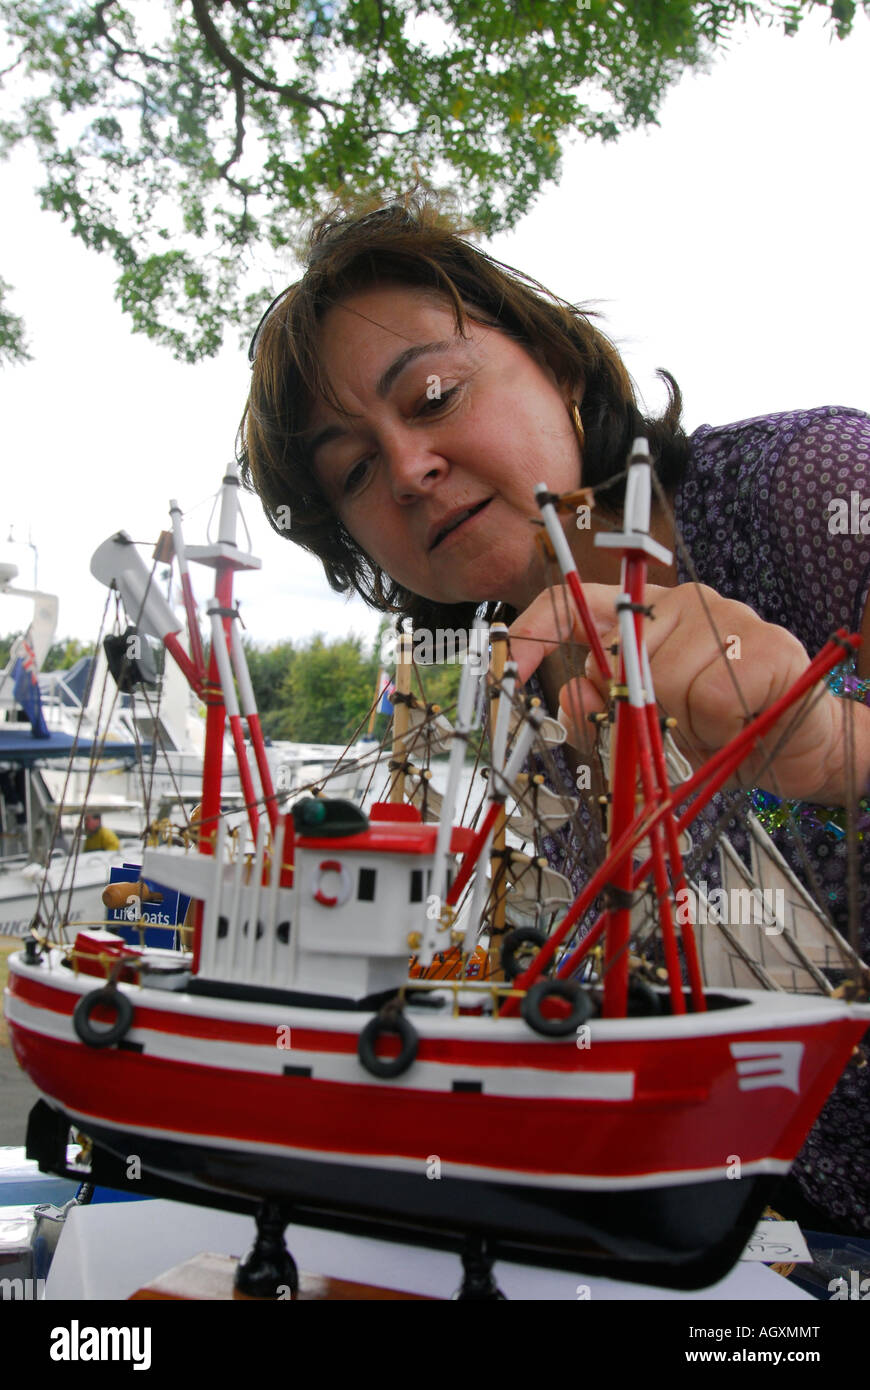 Woman examining model Lifeboat at a fundraising day, Surbiton, Surrey, UK. Stock Photo